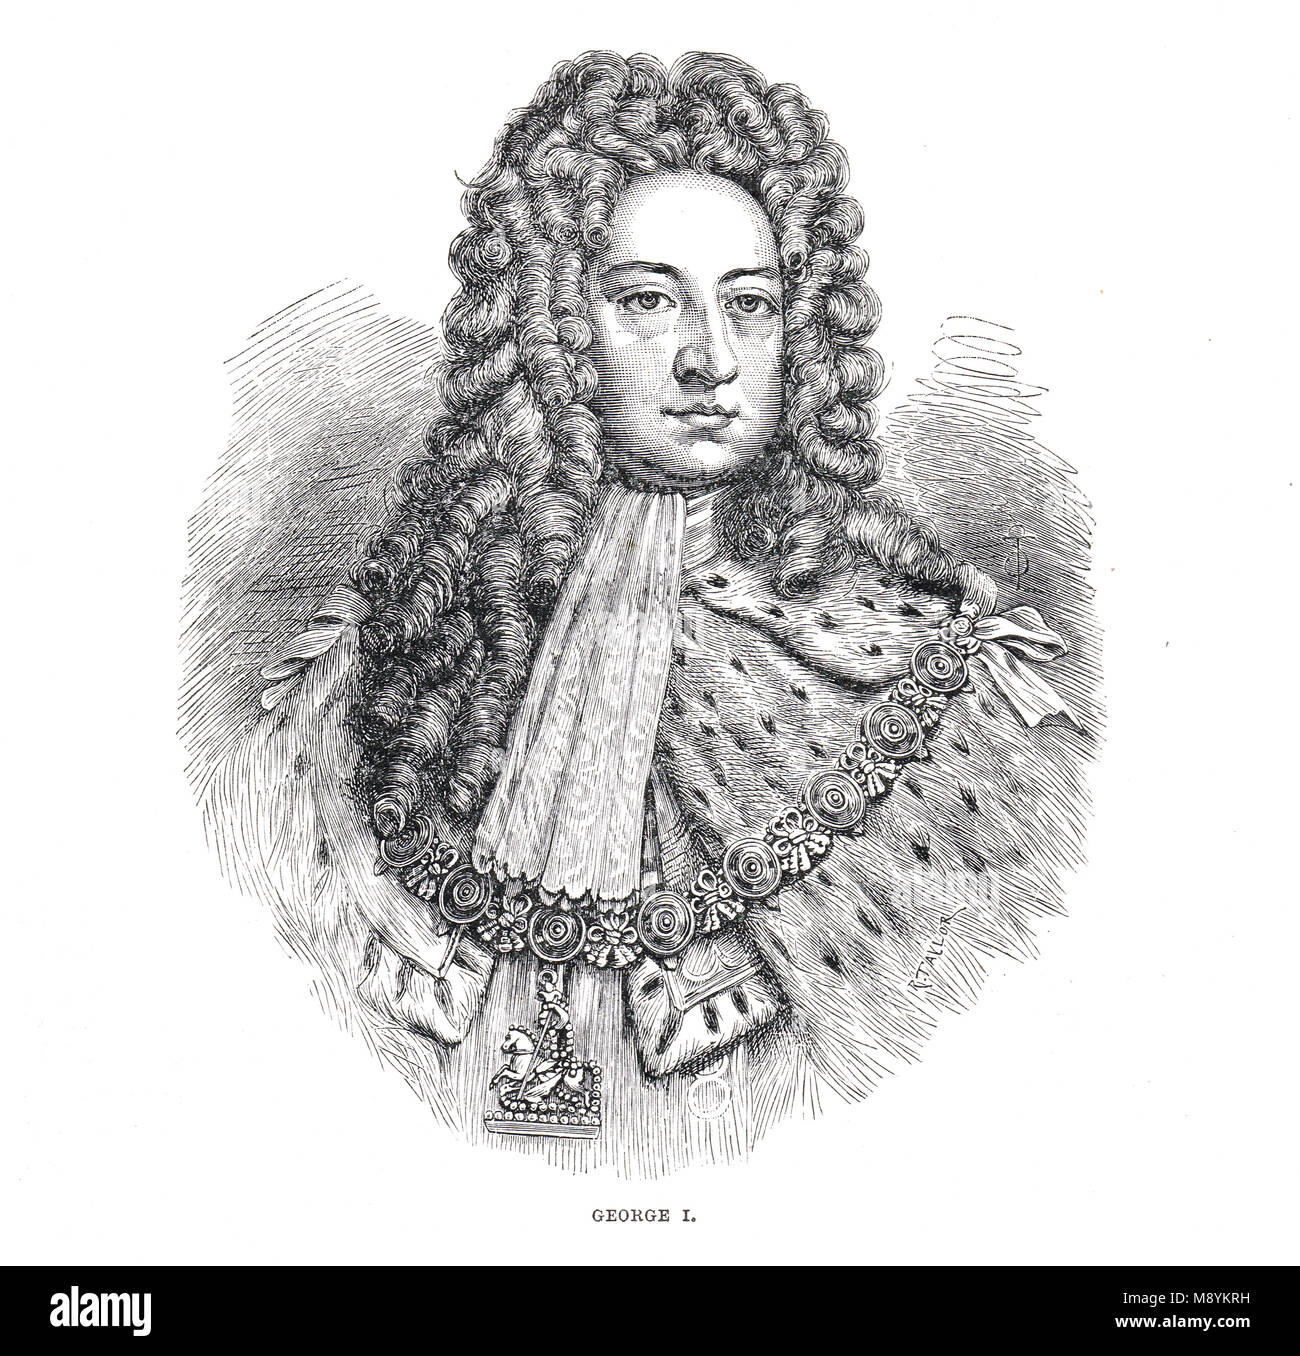 König Georg I. von des Vereinigten Königreichs von Großbritannien und Irland, regierte 1714-1727, erste Monarch aus dem Haus Hannover Stockfoto